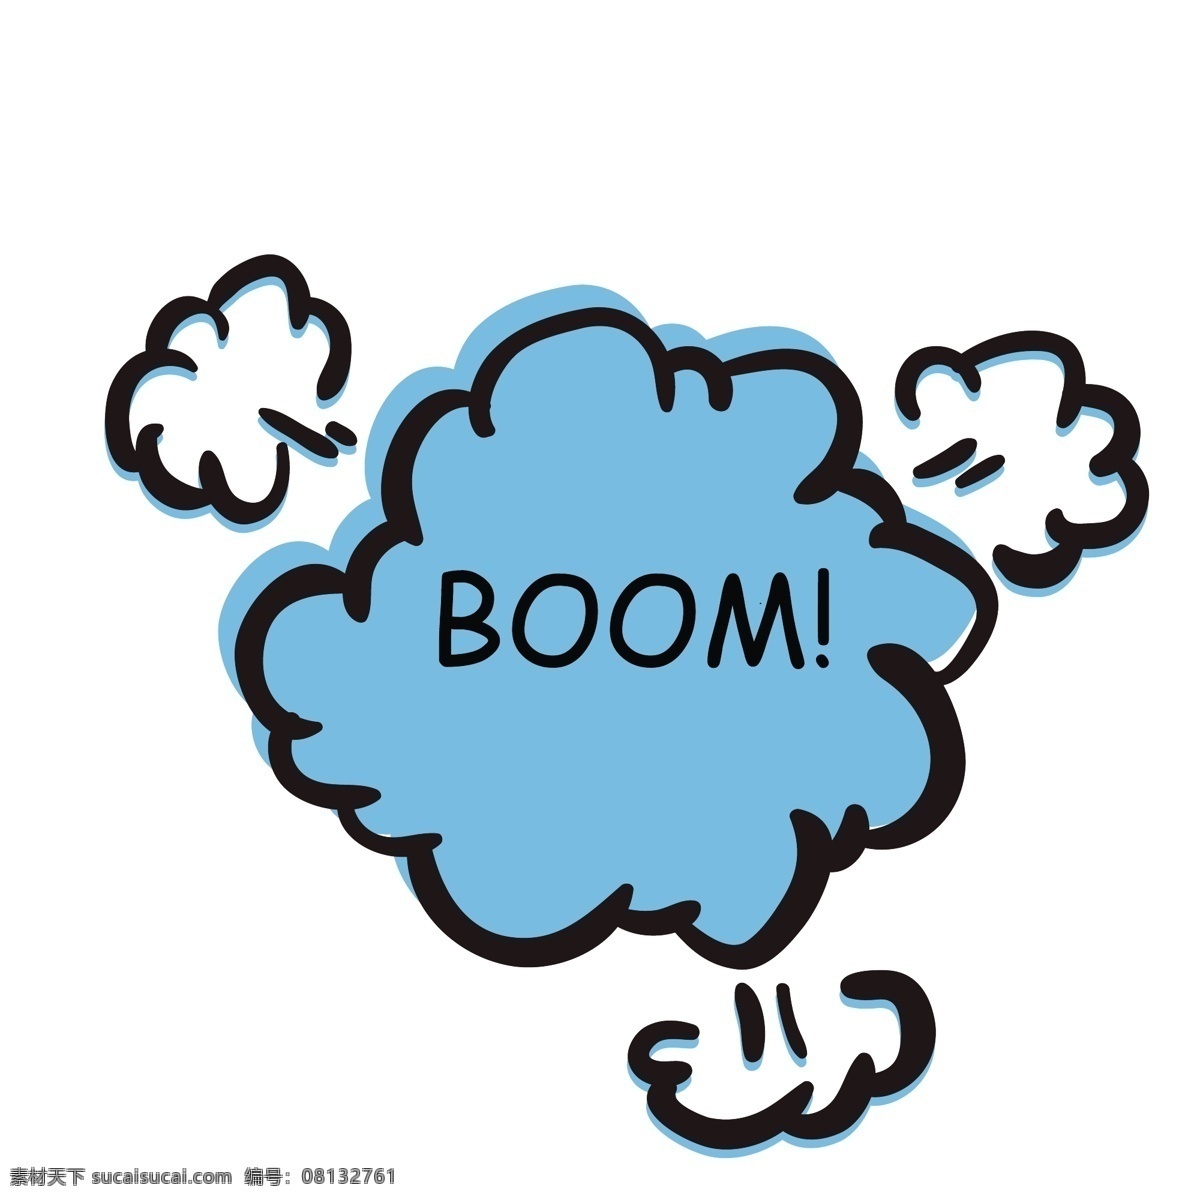 矢量图 手绘 蓝色 爆炸 效果 对话框 卡通 气泡 爆炸框 卡通气泡 气体 光芒 boom bam